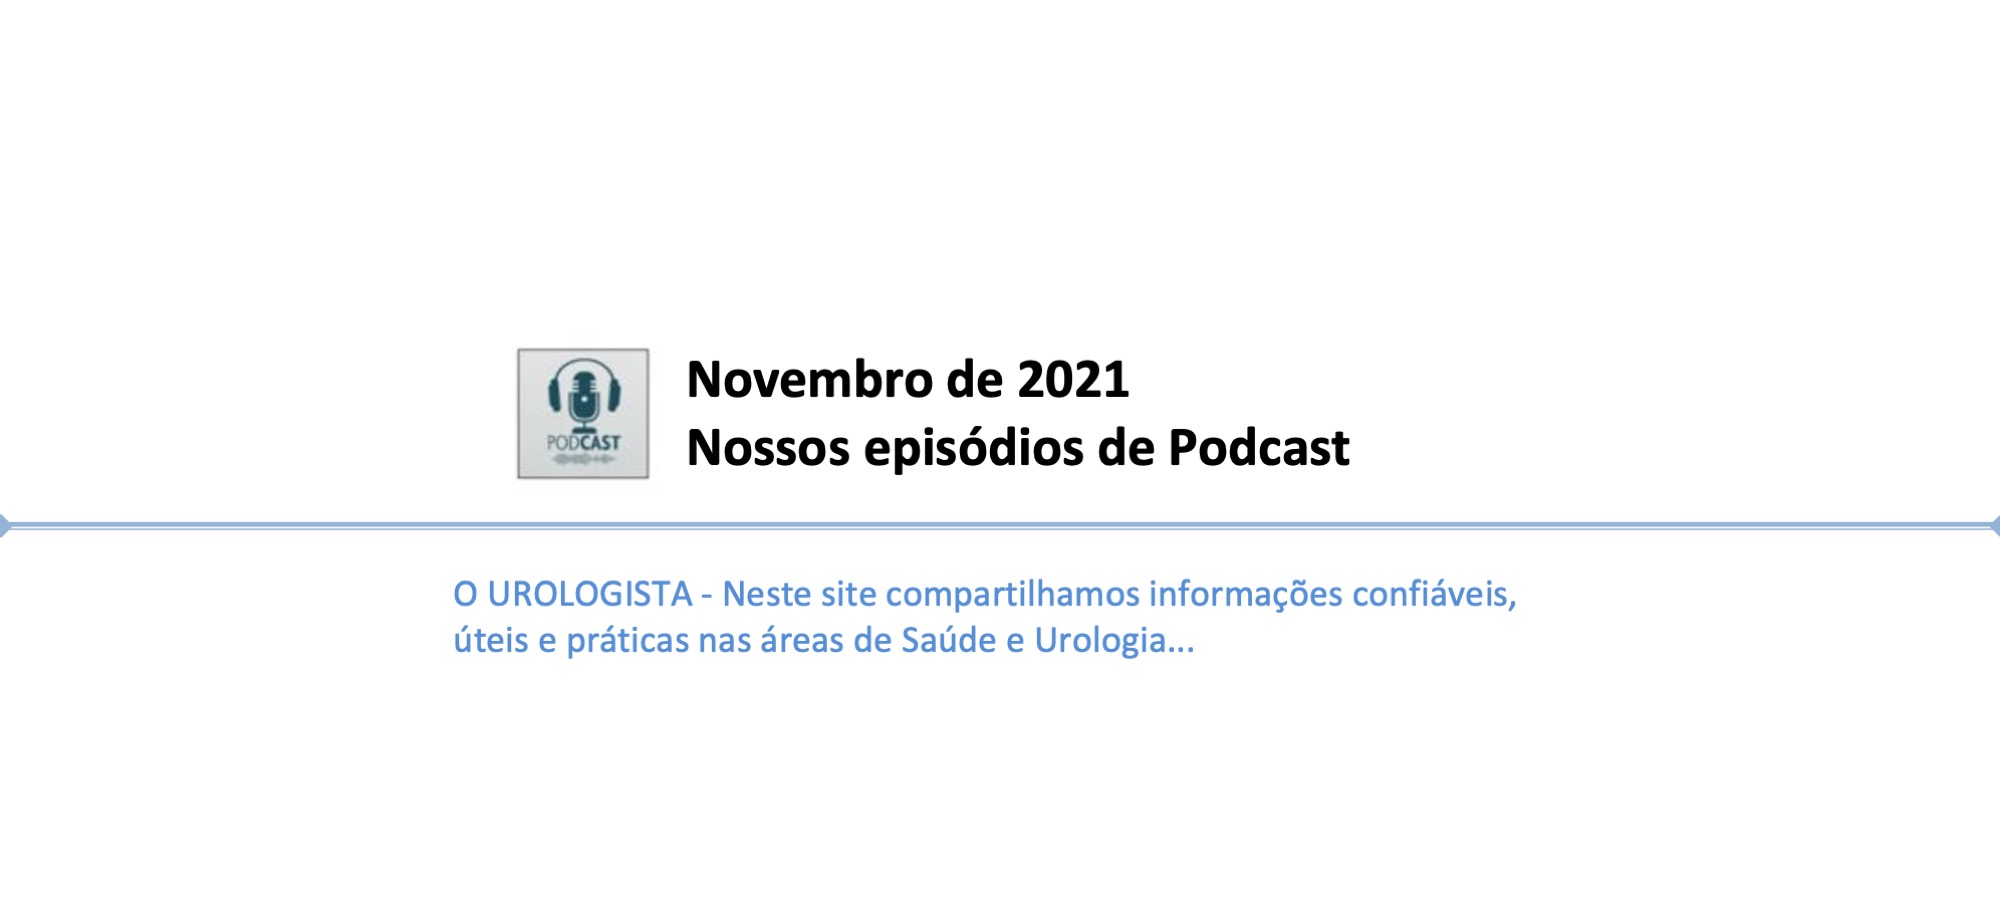 Novembro de 2021: nossos episódios de Podcast